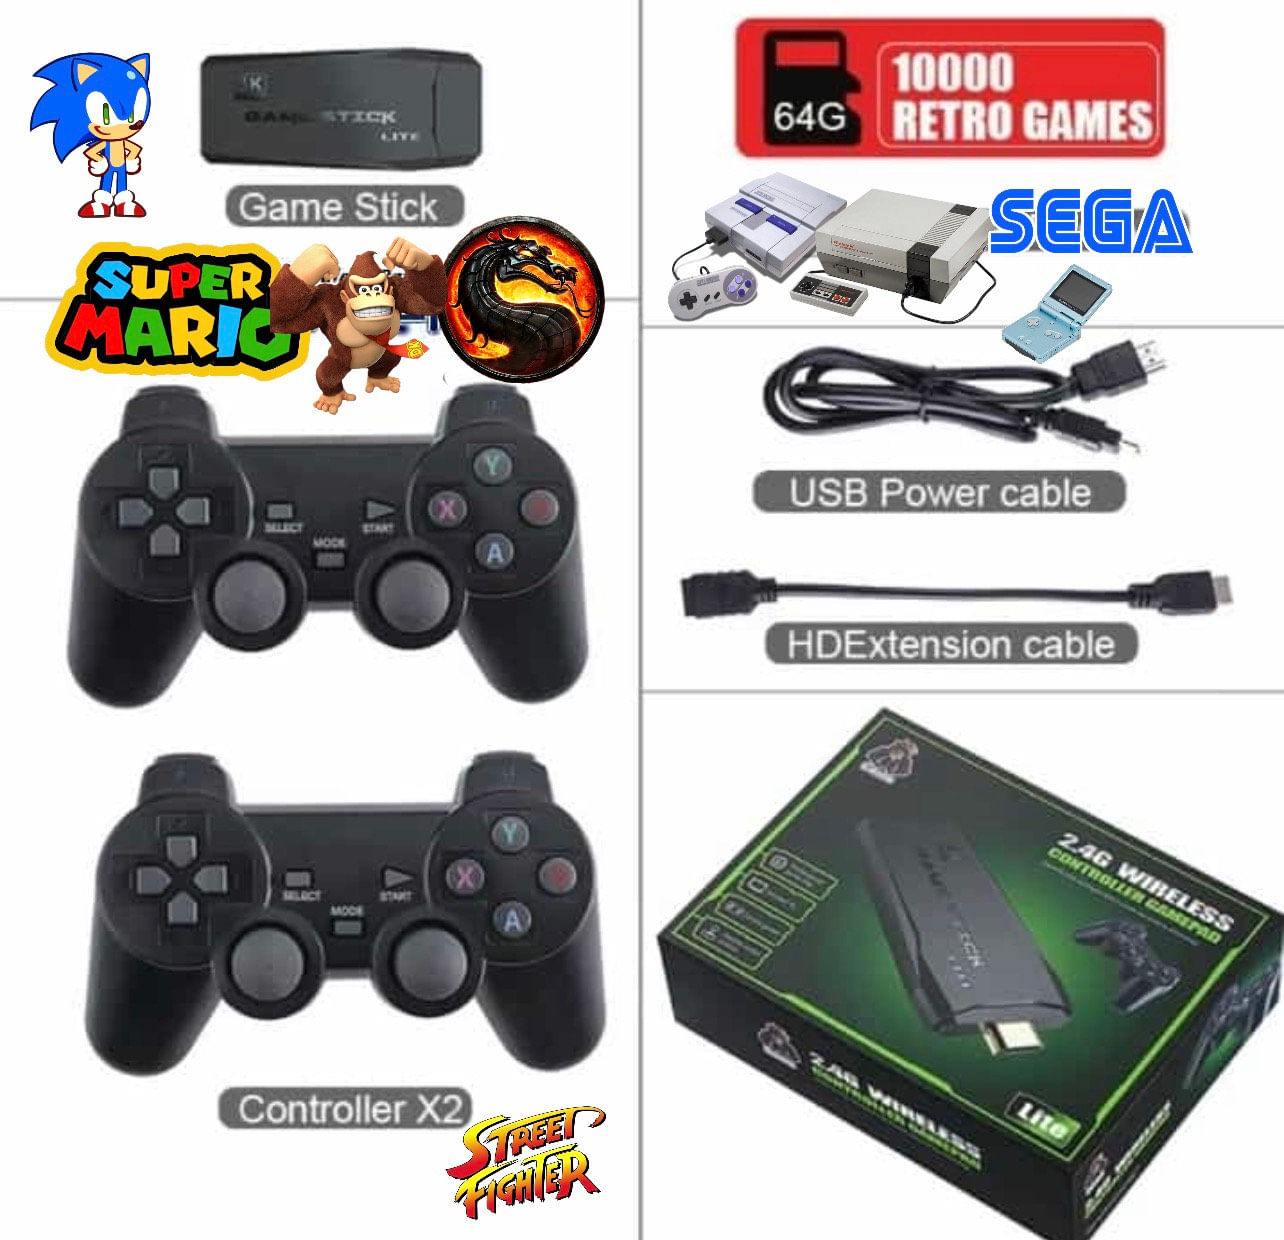 Consola SNES PS1 Retro 10000 Juegos + 2 Mandos 2.4 GHZ